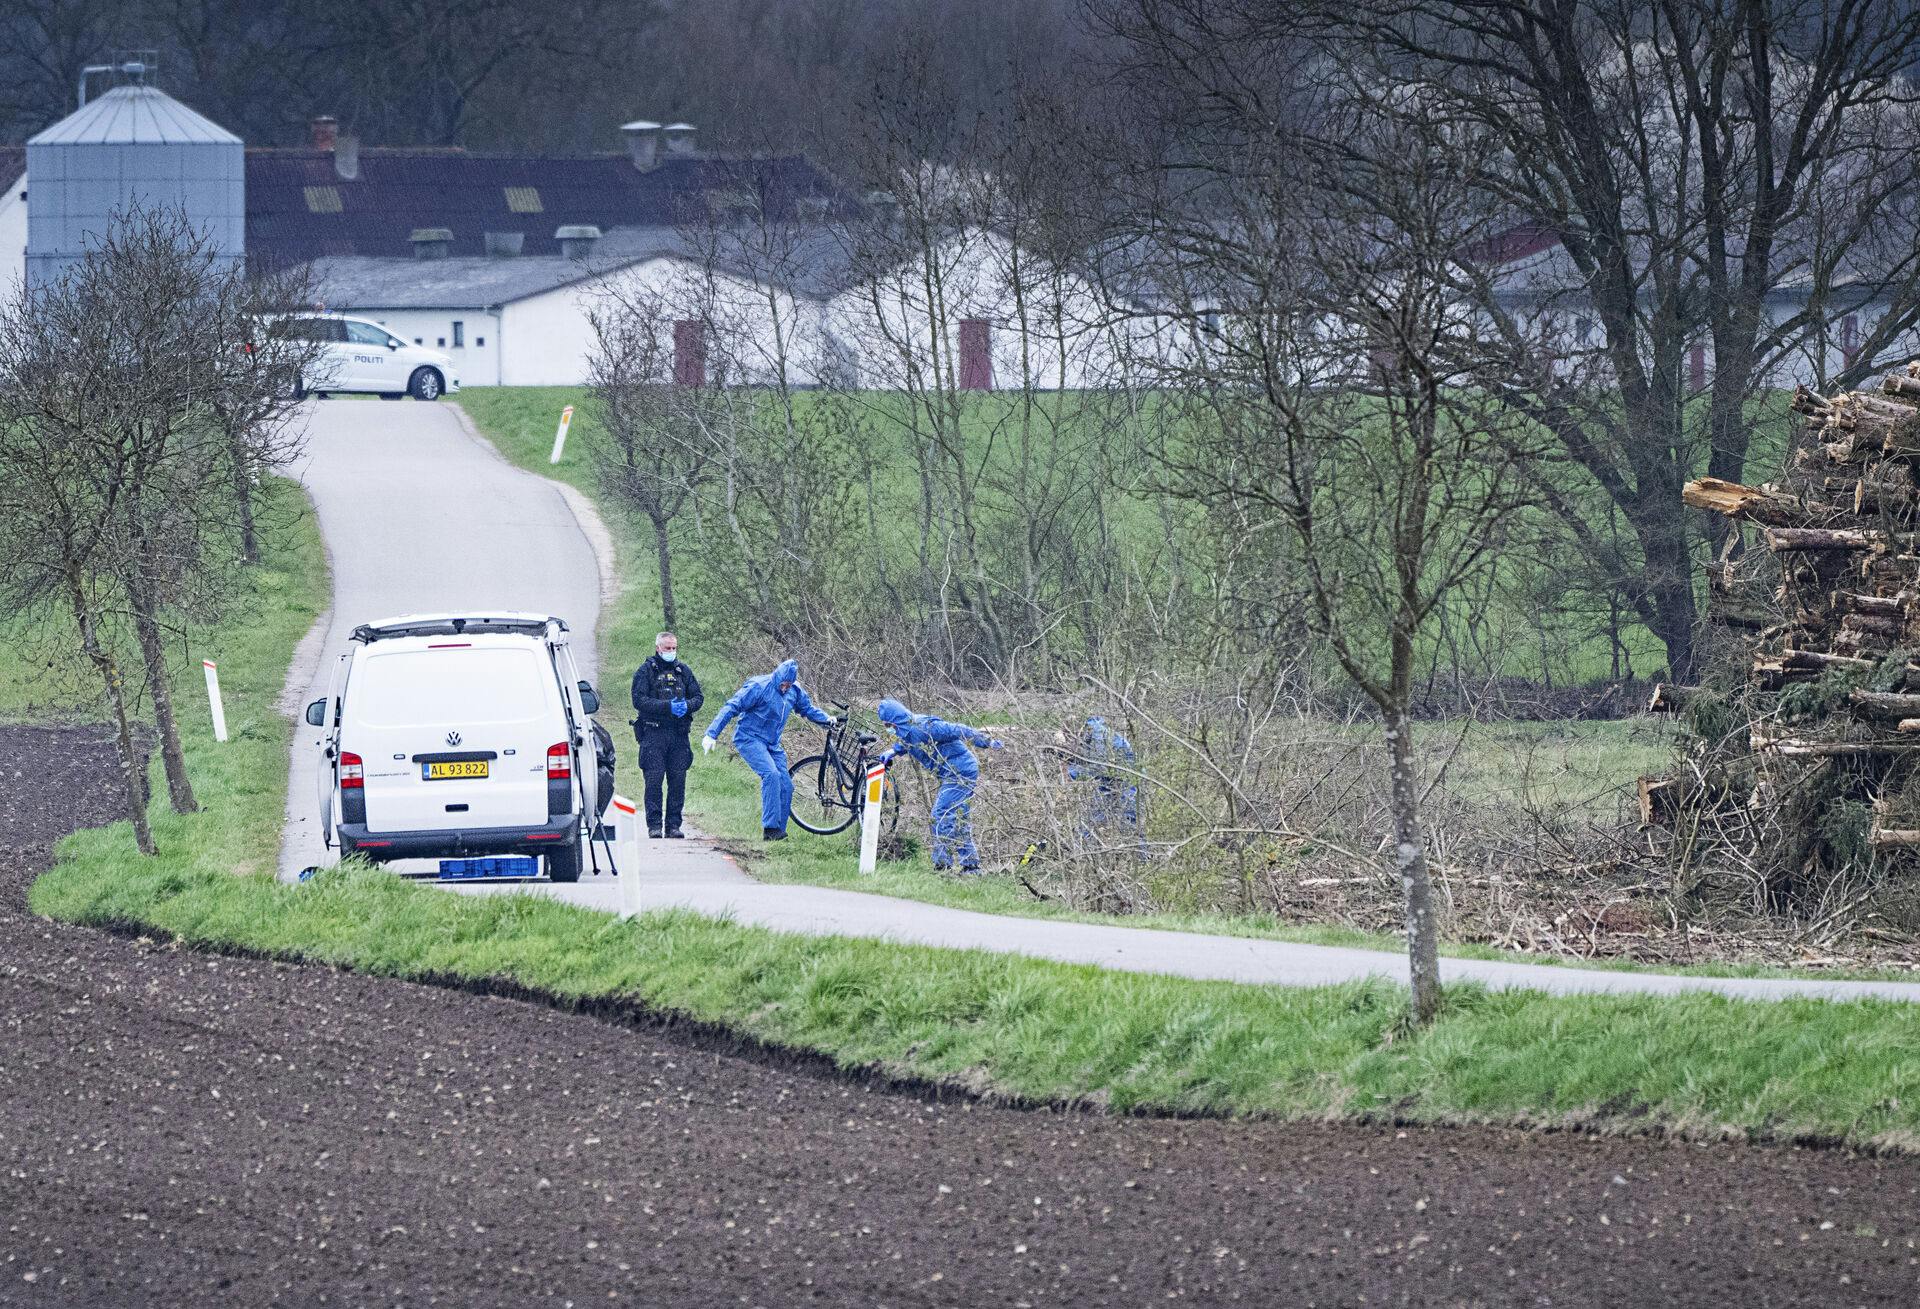 Politiet undersøger den 13-årige piges cykel og ejendele, der lå smidt i vejkanten, efter hun blev bortført lørdag den 15. april i Kirkerup på Vestsjælland.
